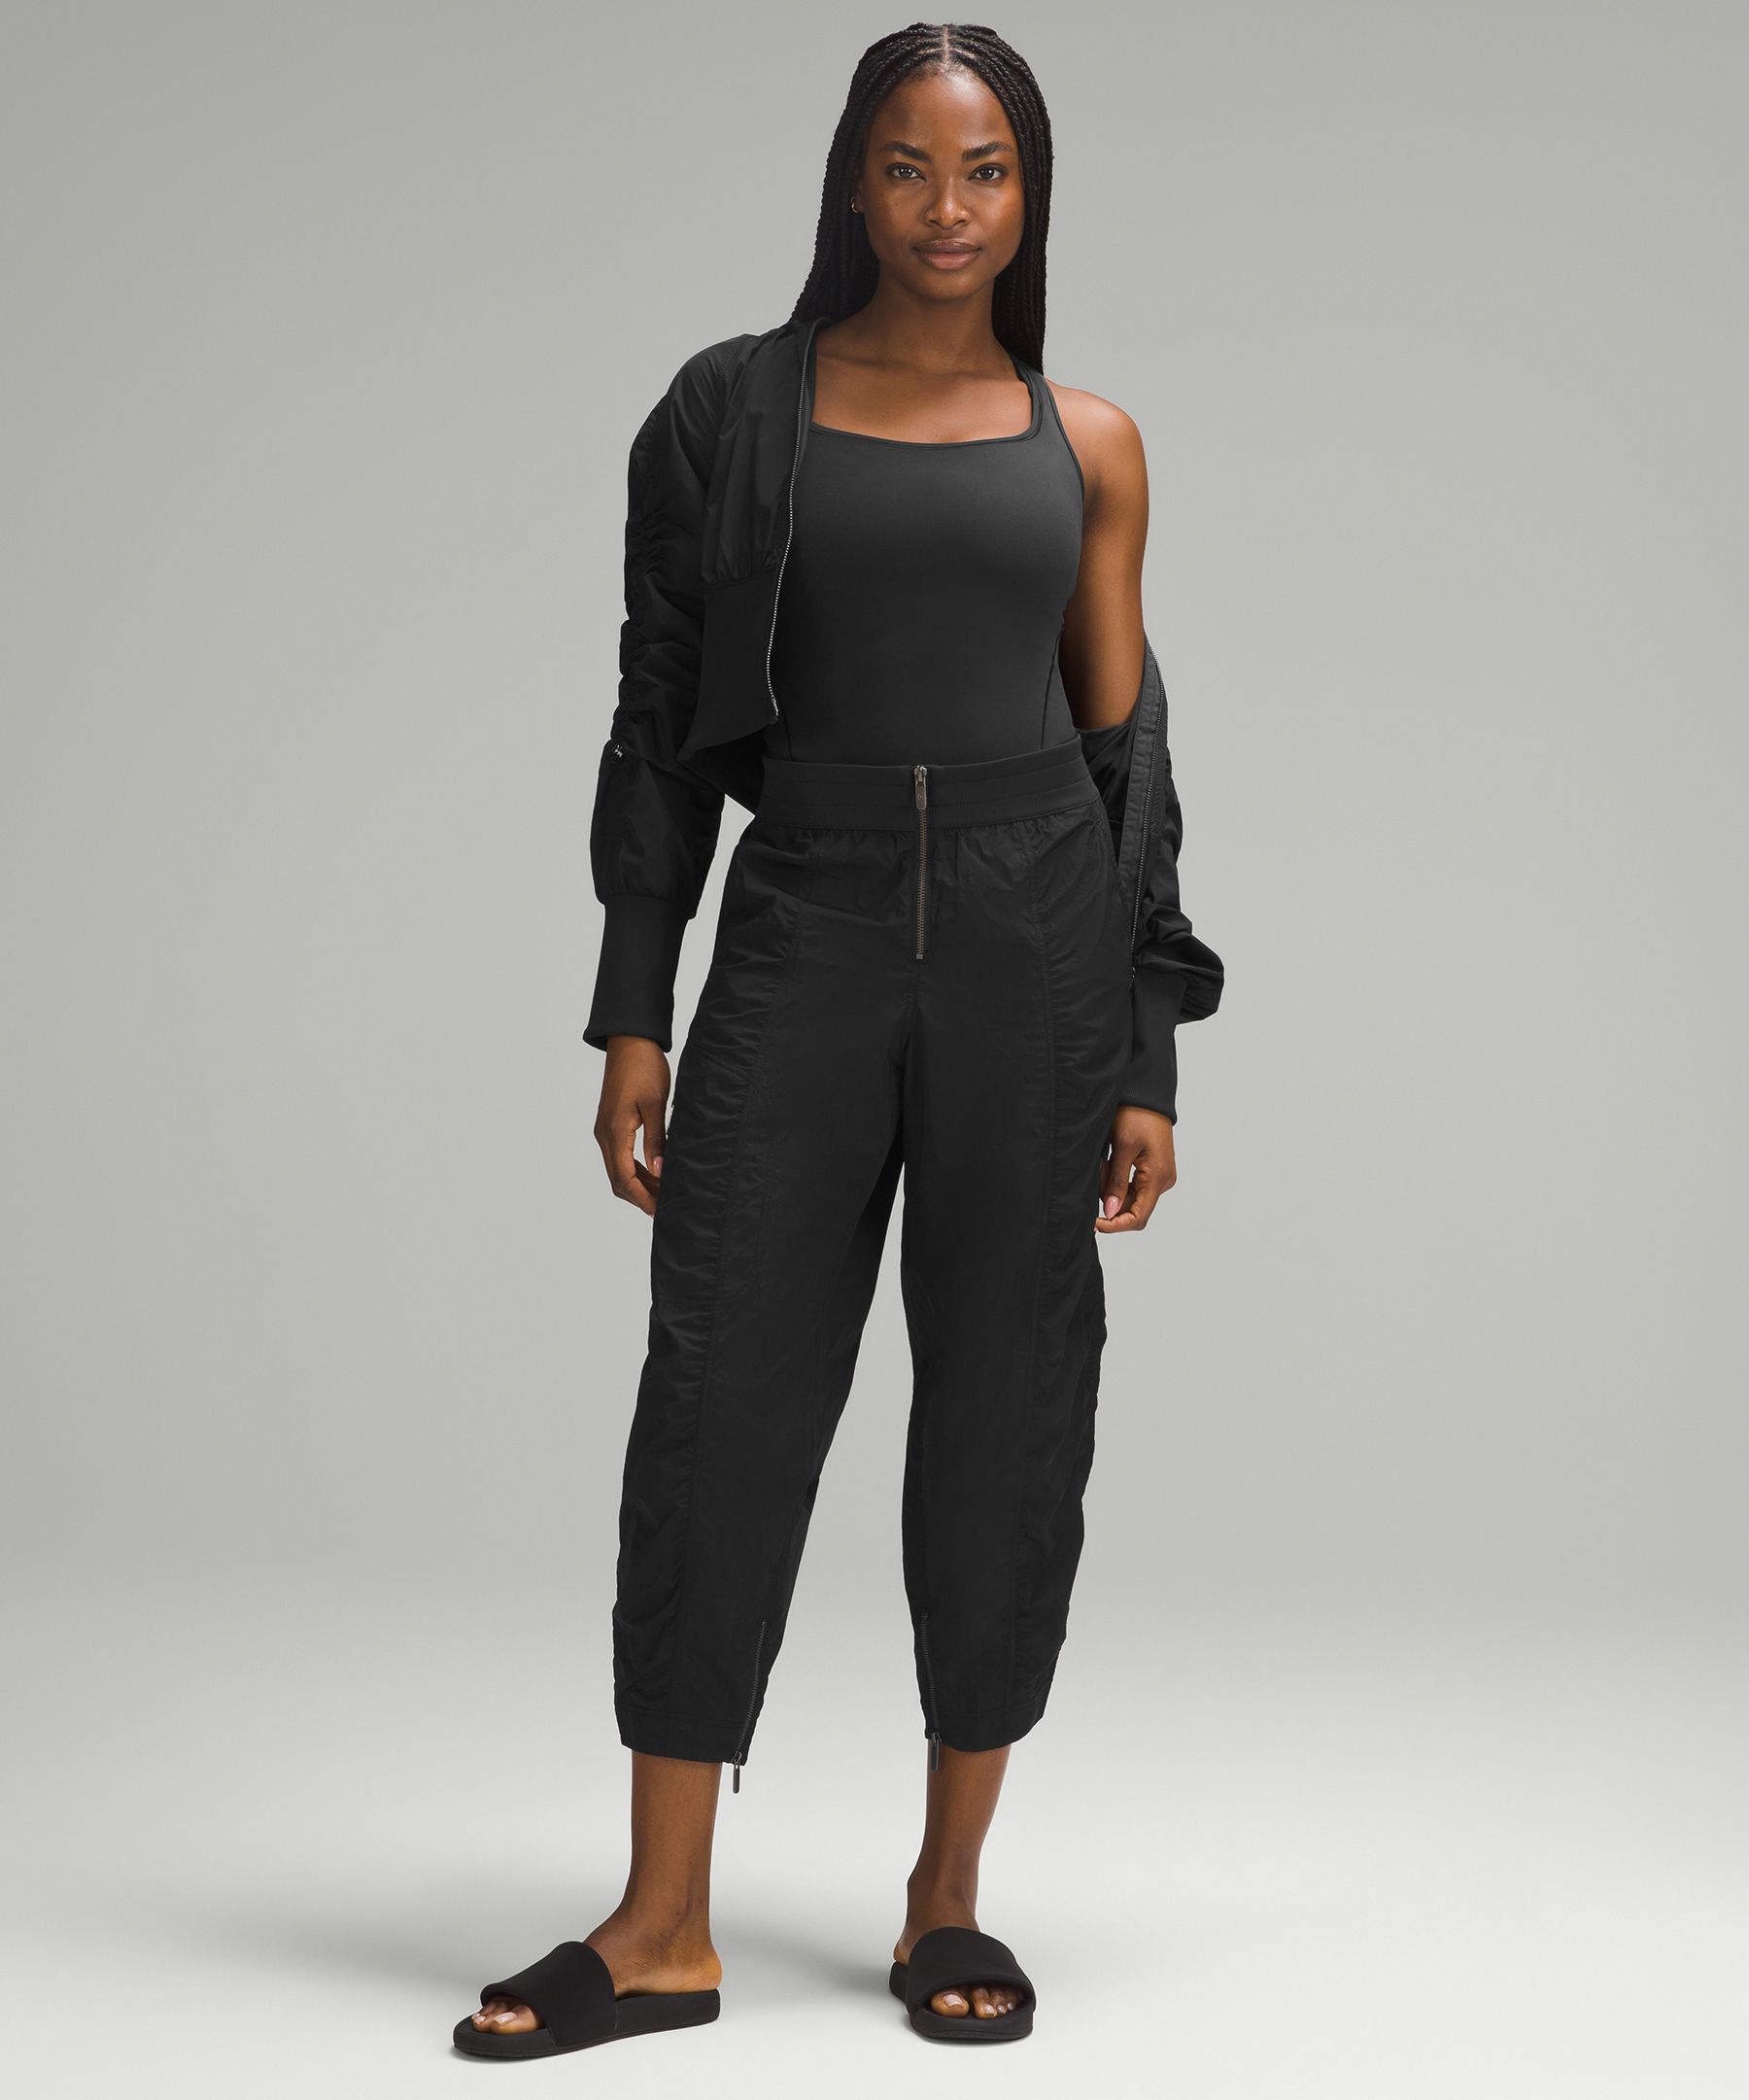 Cute Black Bodysuit - Short Sleeve Bodysuit - Scoop Back Bodysuit - Lulus